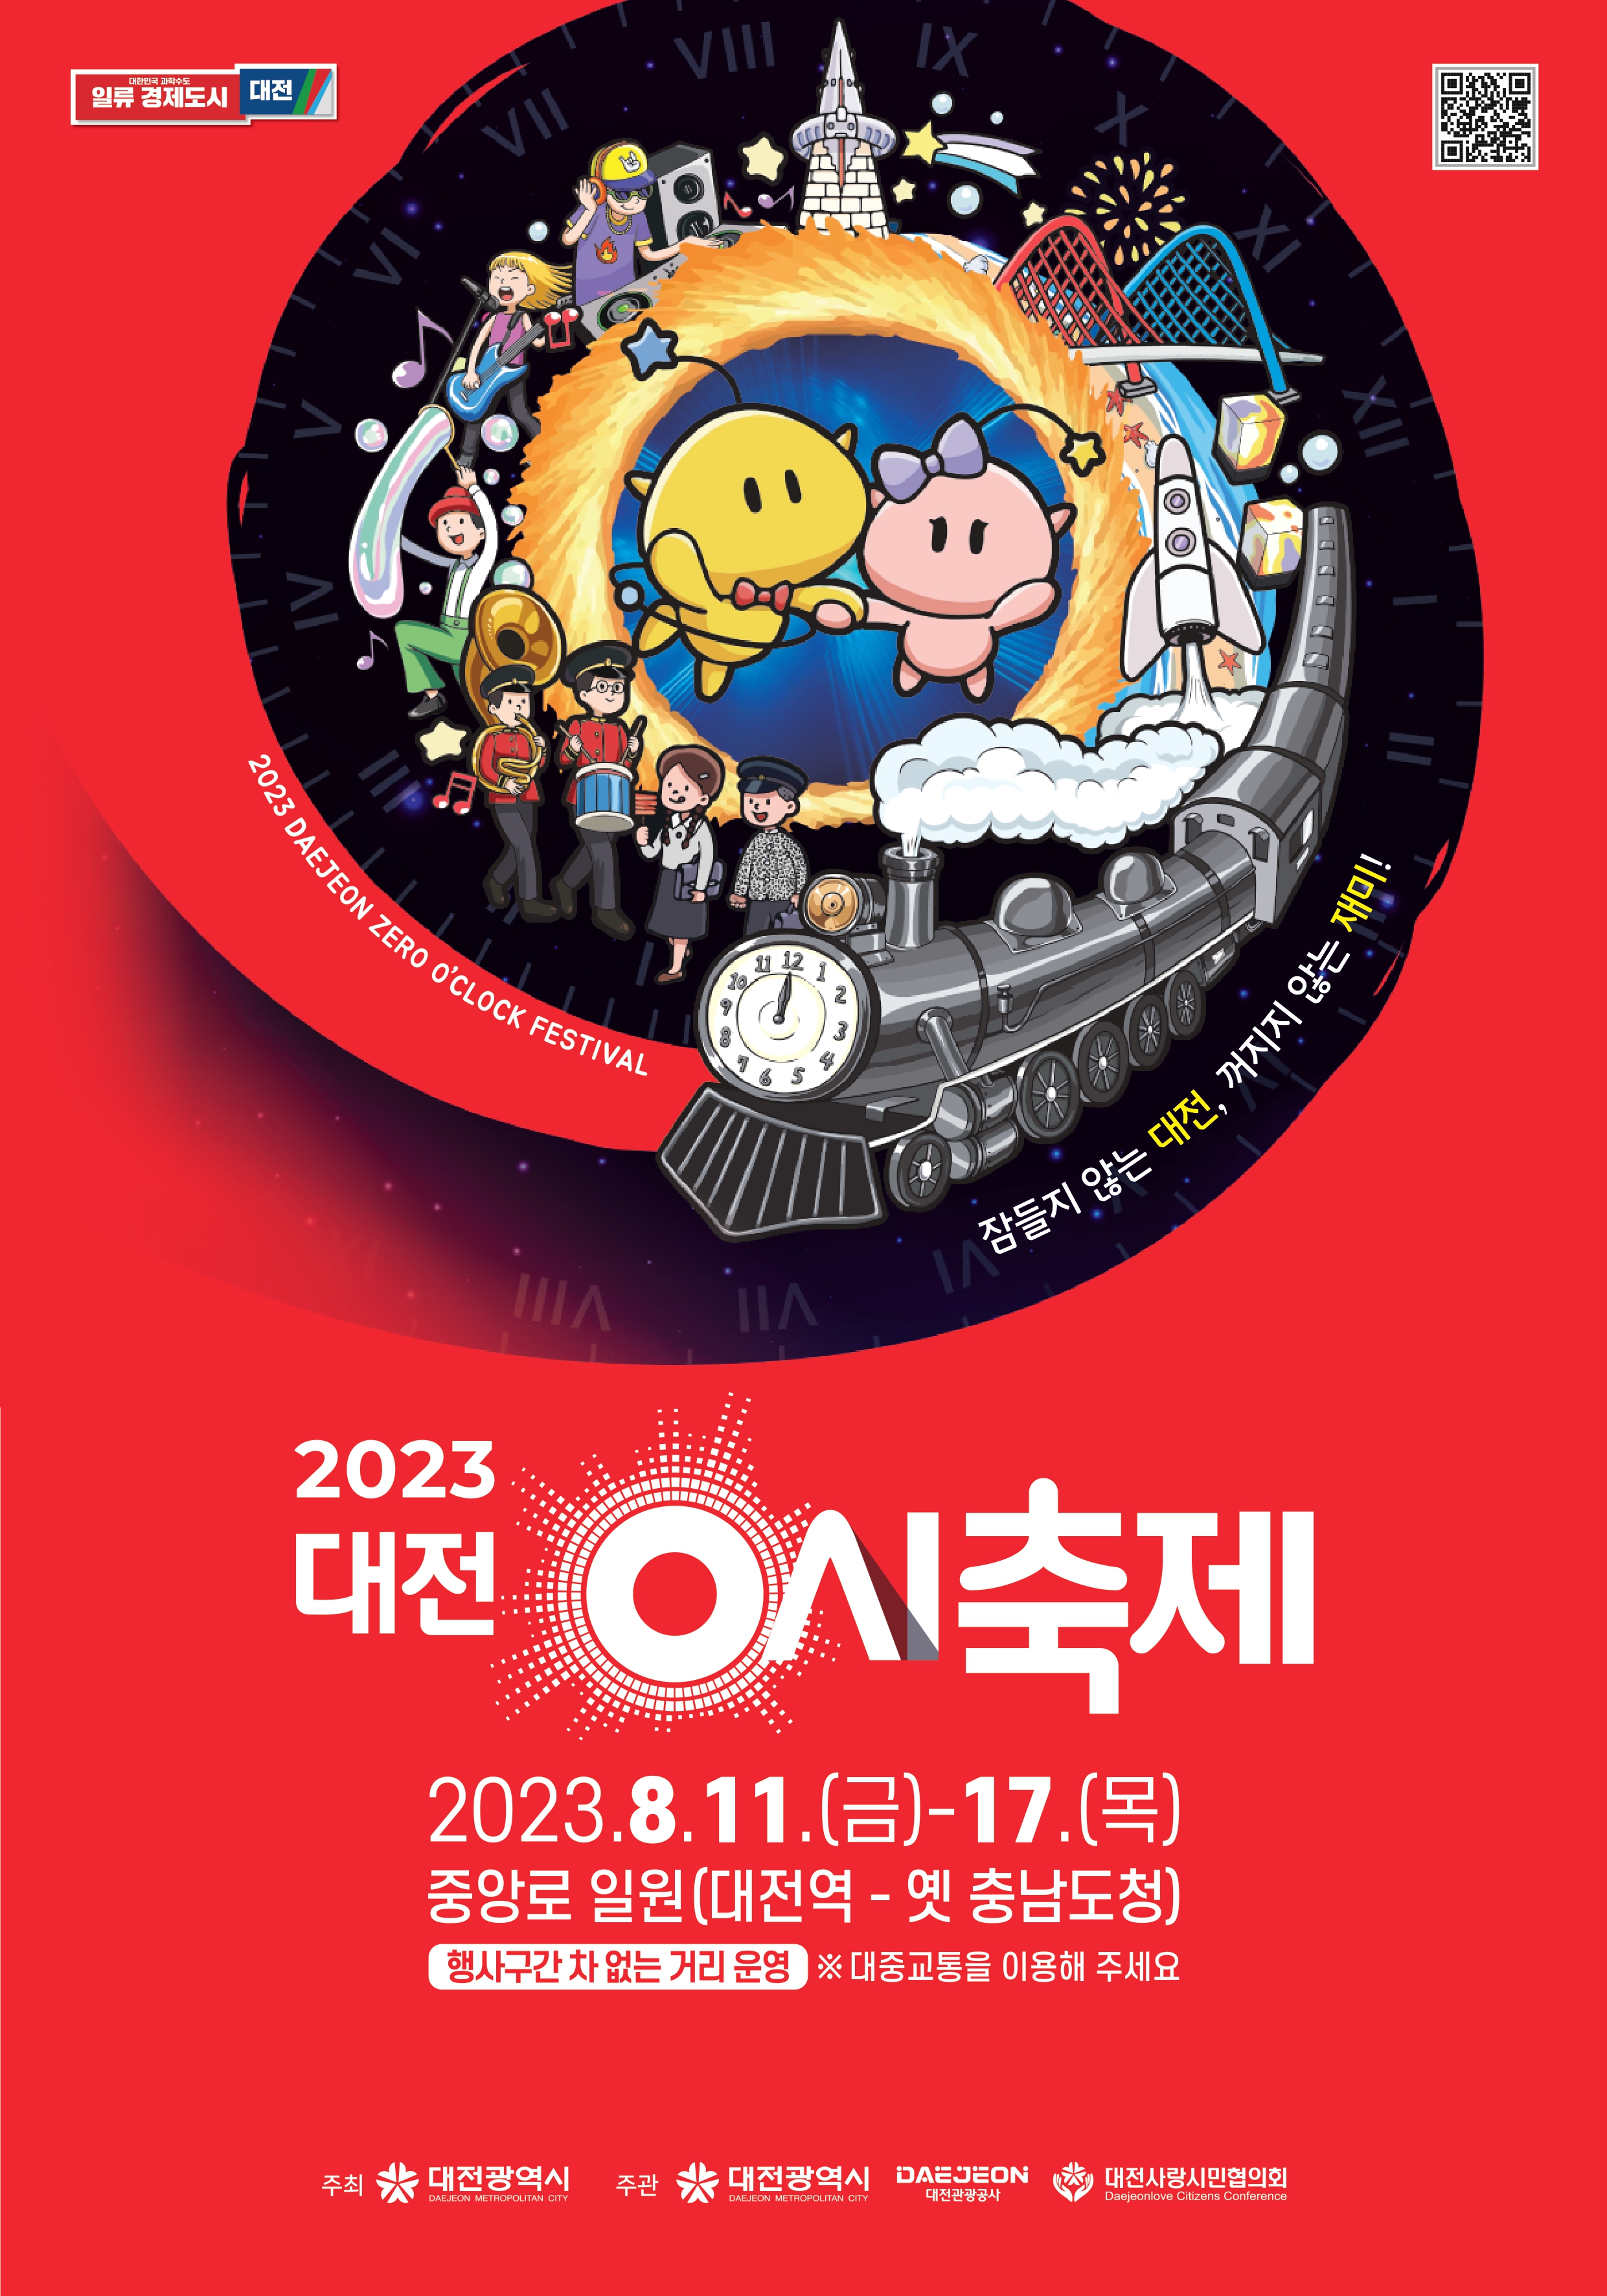 2023 대전0시축제['2023.8.11.~8.17.] 대문사진